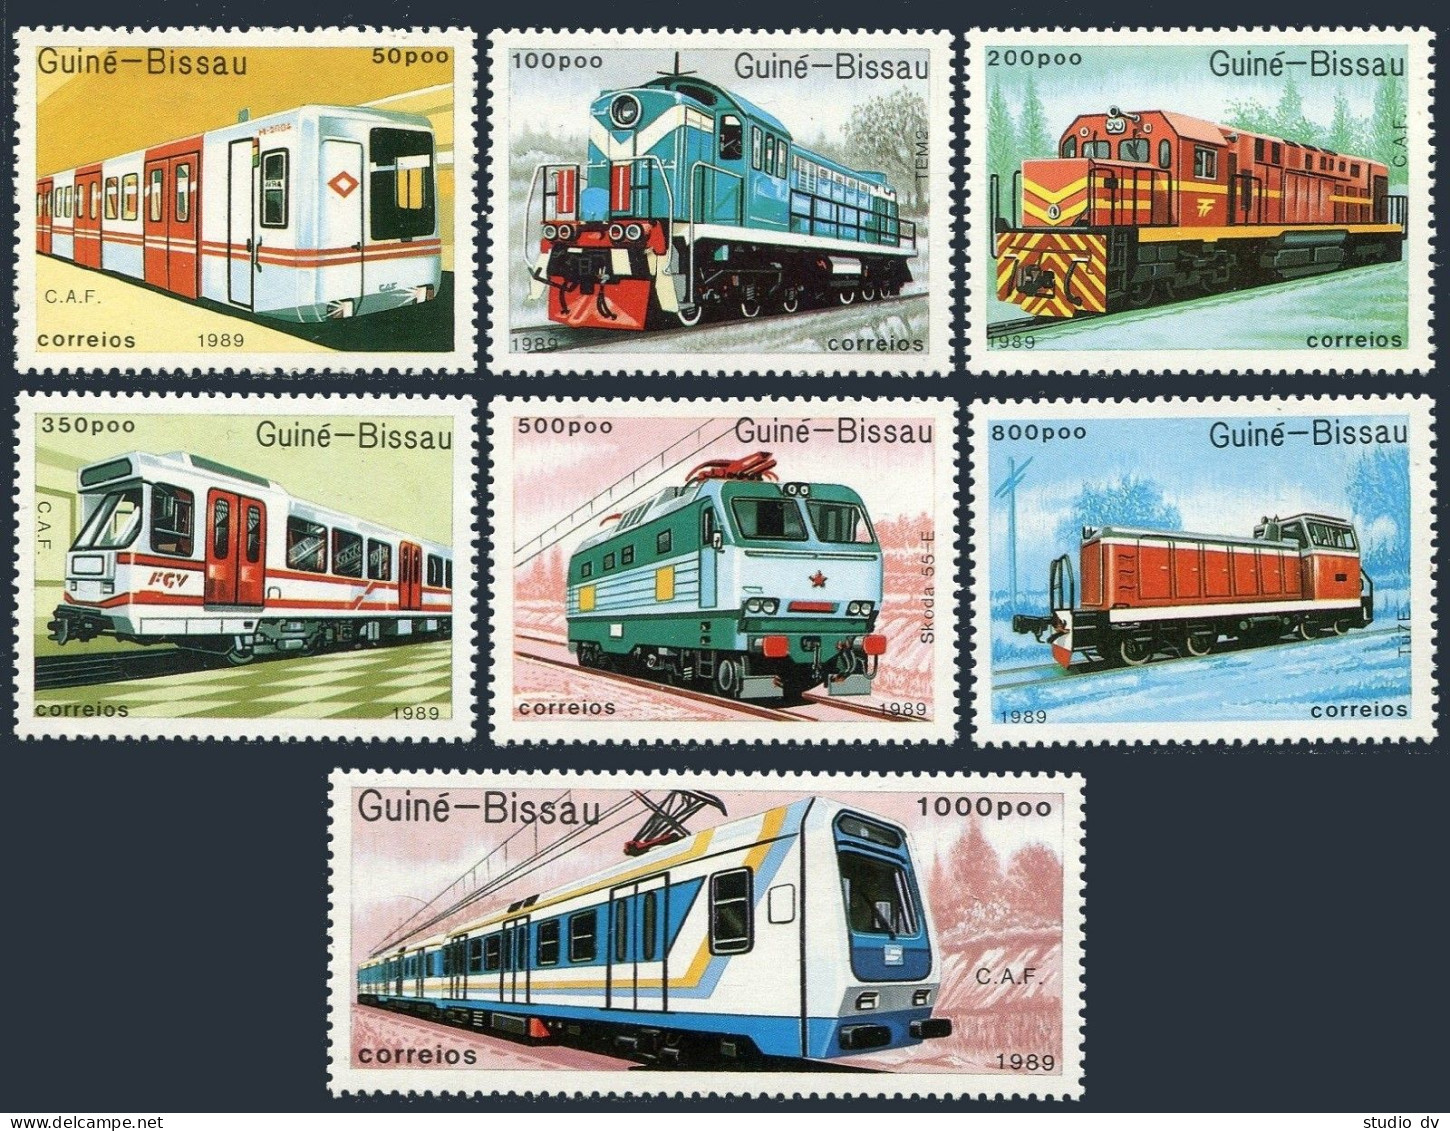 Guinea Bissau 795-801,802,MNH.Michel 1033-1039,Bl.276.Trains-89.Railroad Engines - Guinea-Bissau